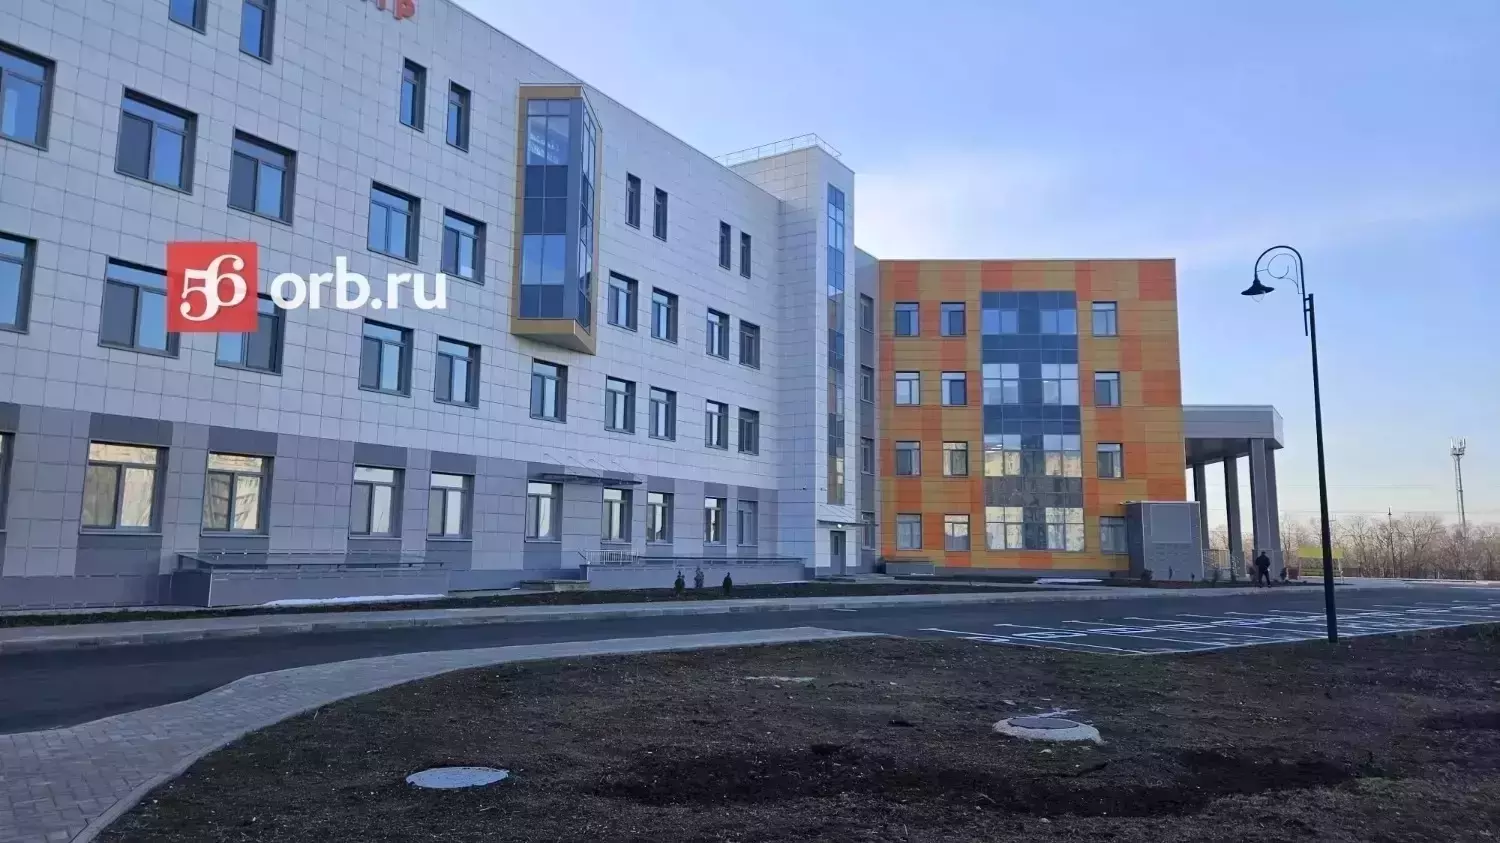 Областная детская больница в Оренбурге